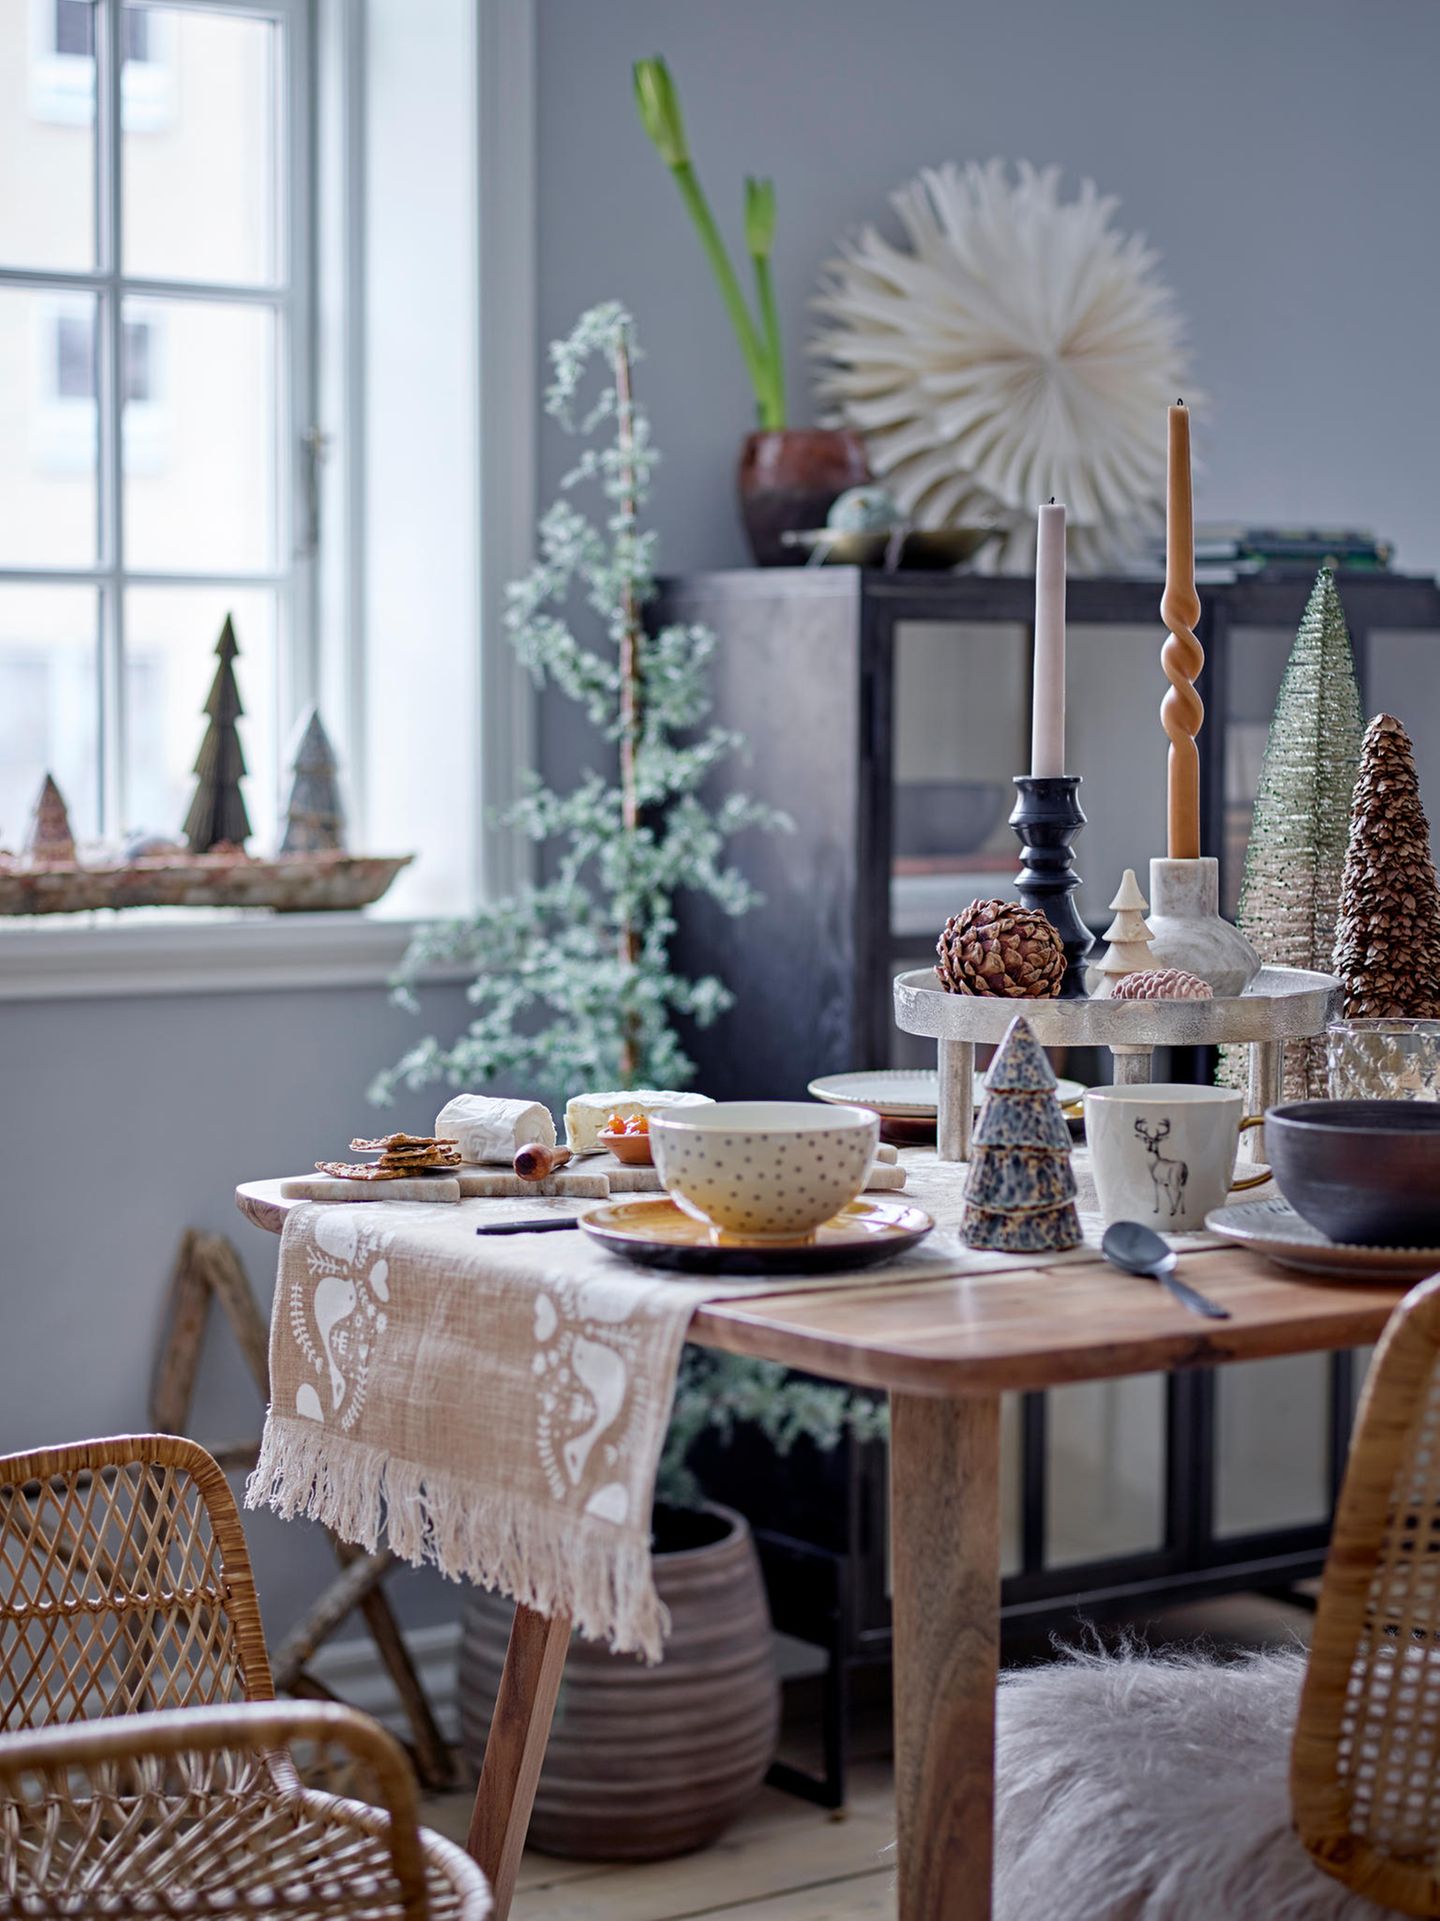 Weihnachtlich dekorierter Tisch mit Tischläufer und Etagere sowie Kerzen und Weihnachtsfiguren